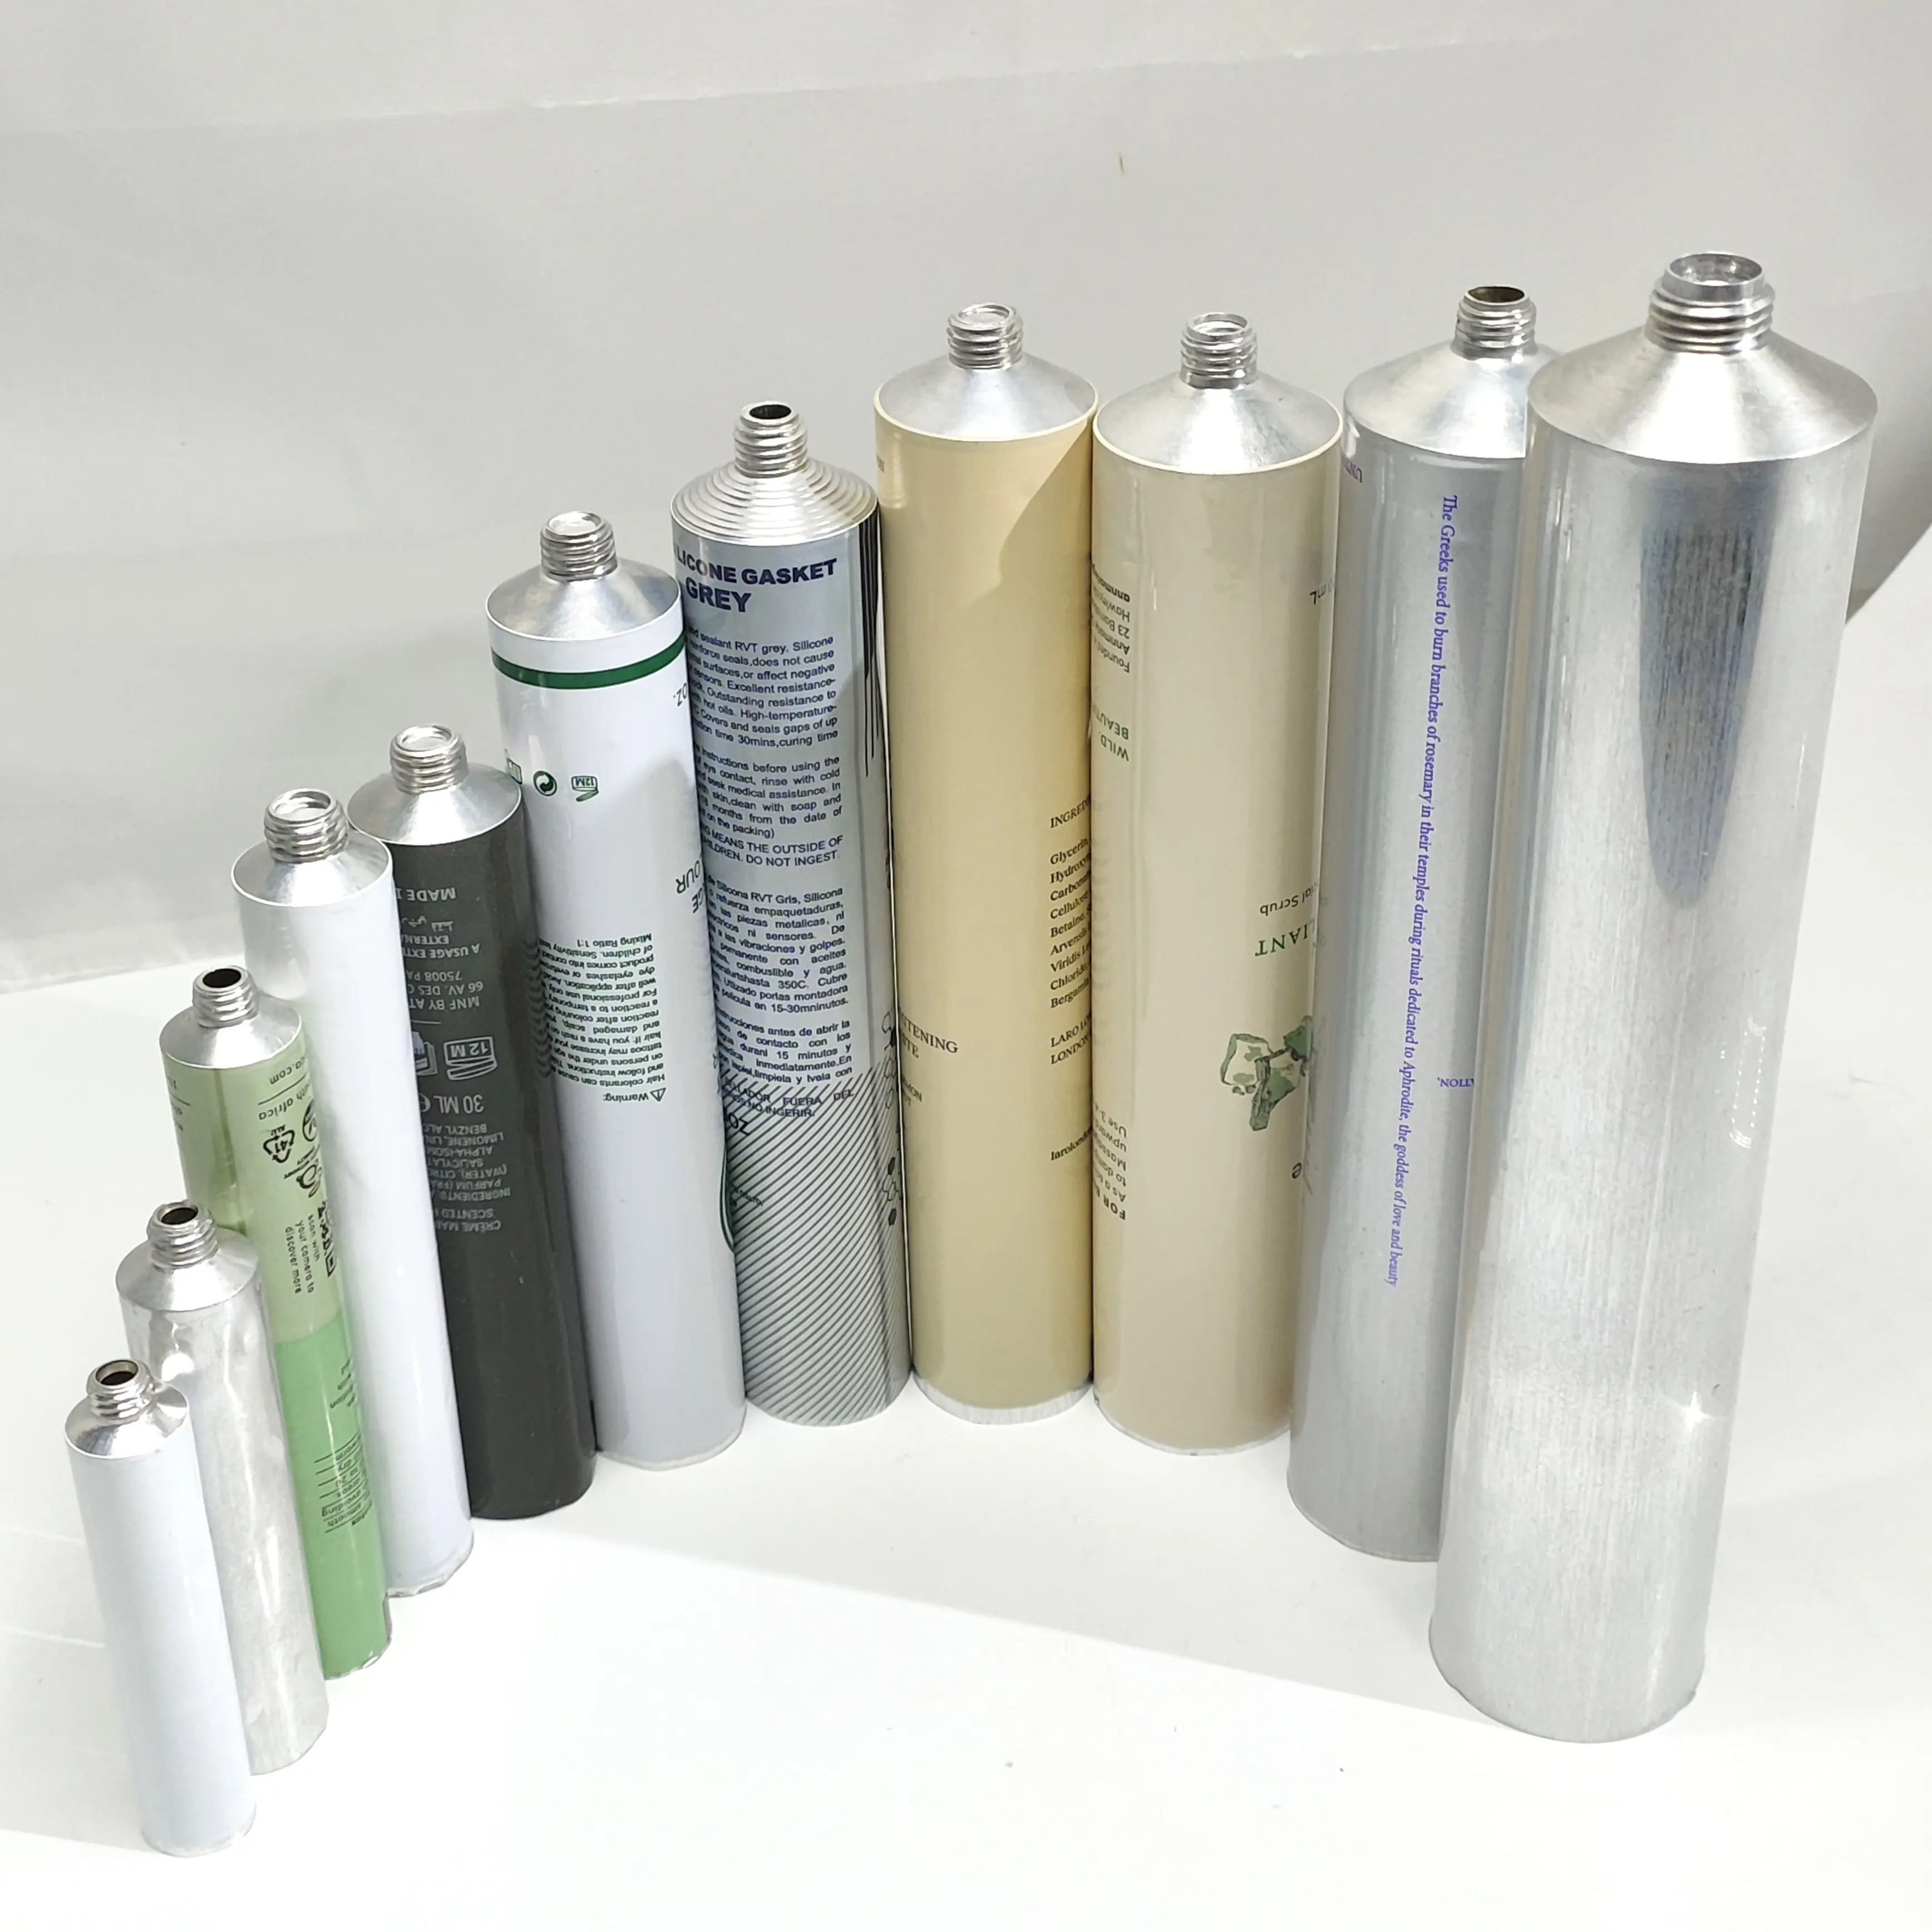 Tubo de aluminio de impresión personalizada de fábrica para embalaje tubo de crema de manos loción cosmética tubo de aluminio plegable